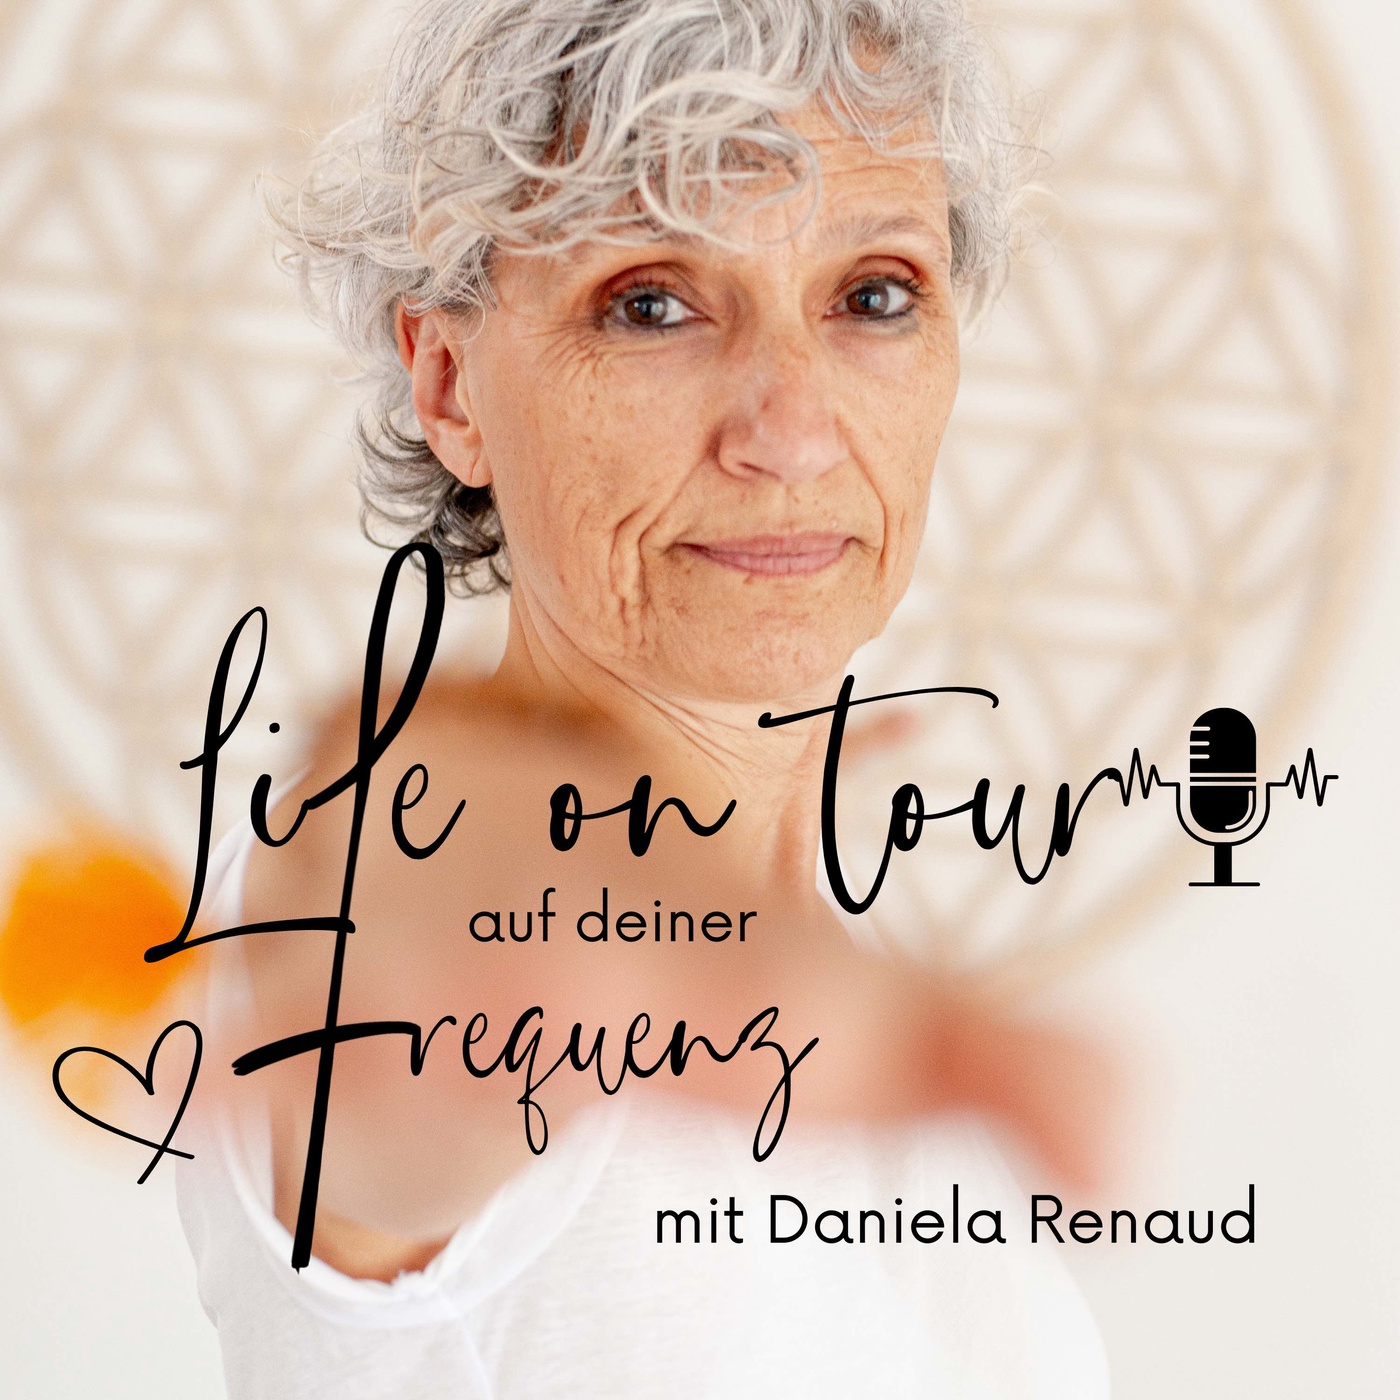 Life on Tour auf deiner Frequenz - Mit Daniela Renaud